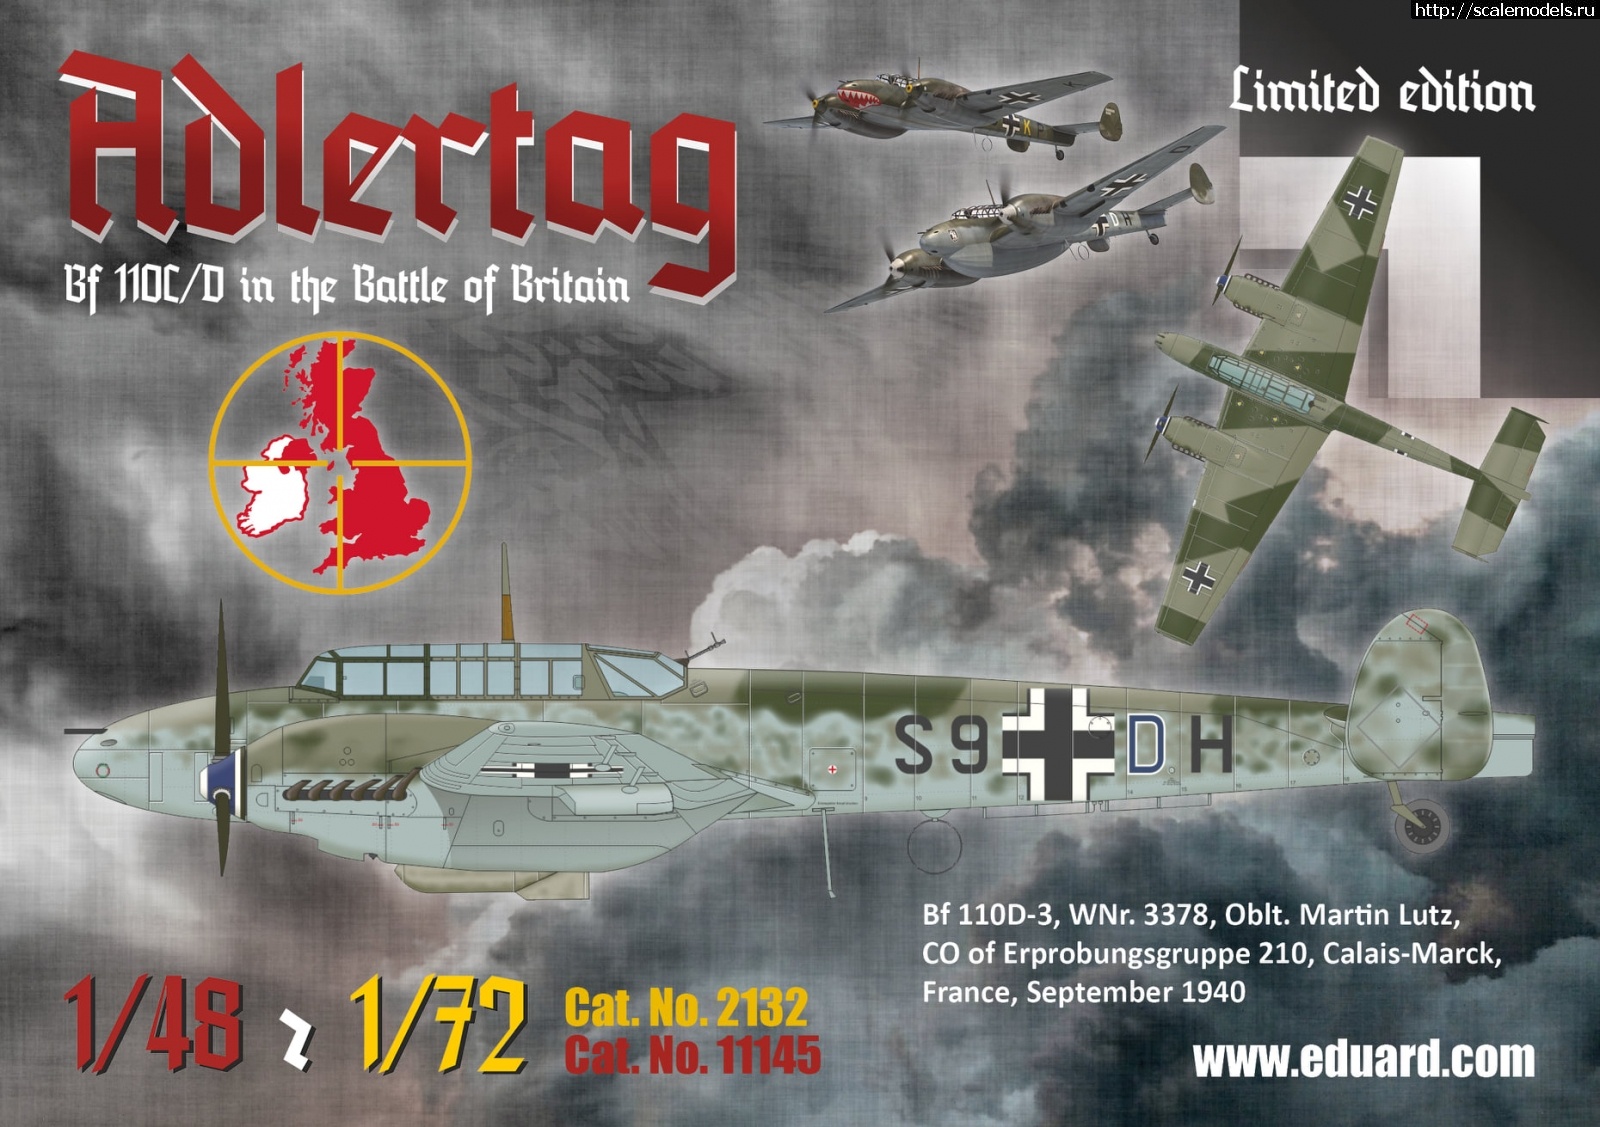 1604573787_123515433_3987468421268075_7448273372366110585_o.jpg :  Eduard 1/48  1/72 Messerschmitt Bf 110C/D Adlertag  